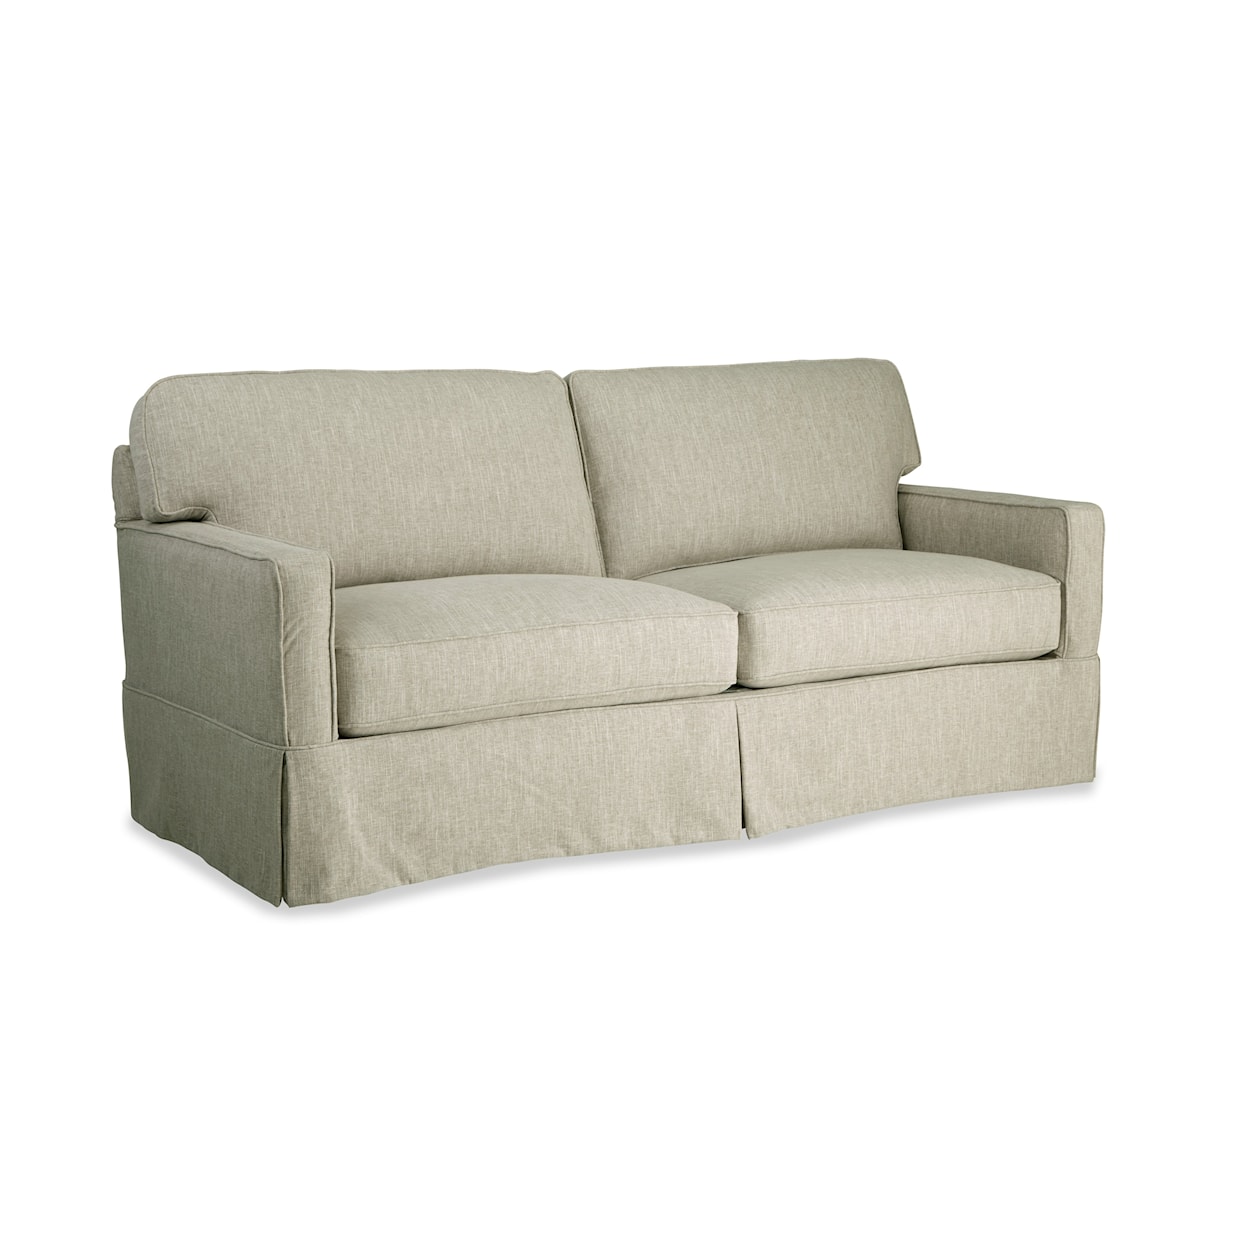 Hickorycraft 937450BD 2-Cushion Slipcover Sofa